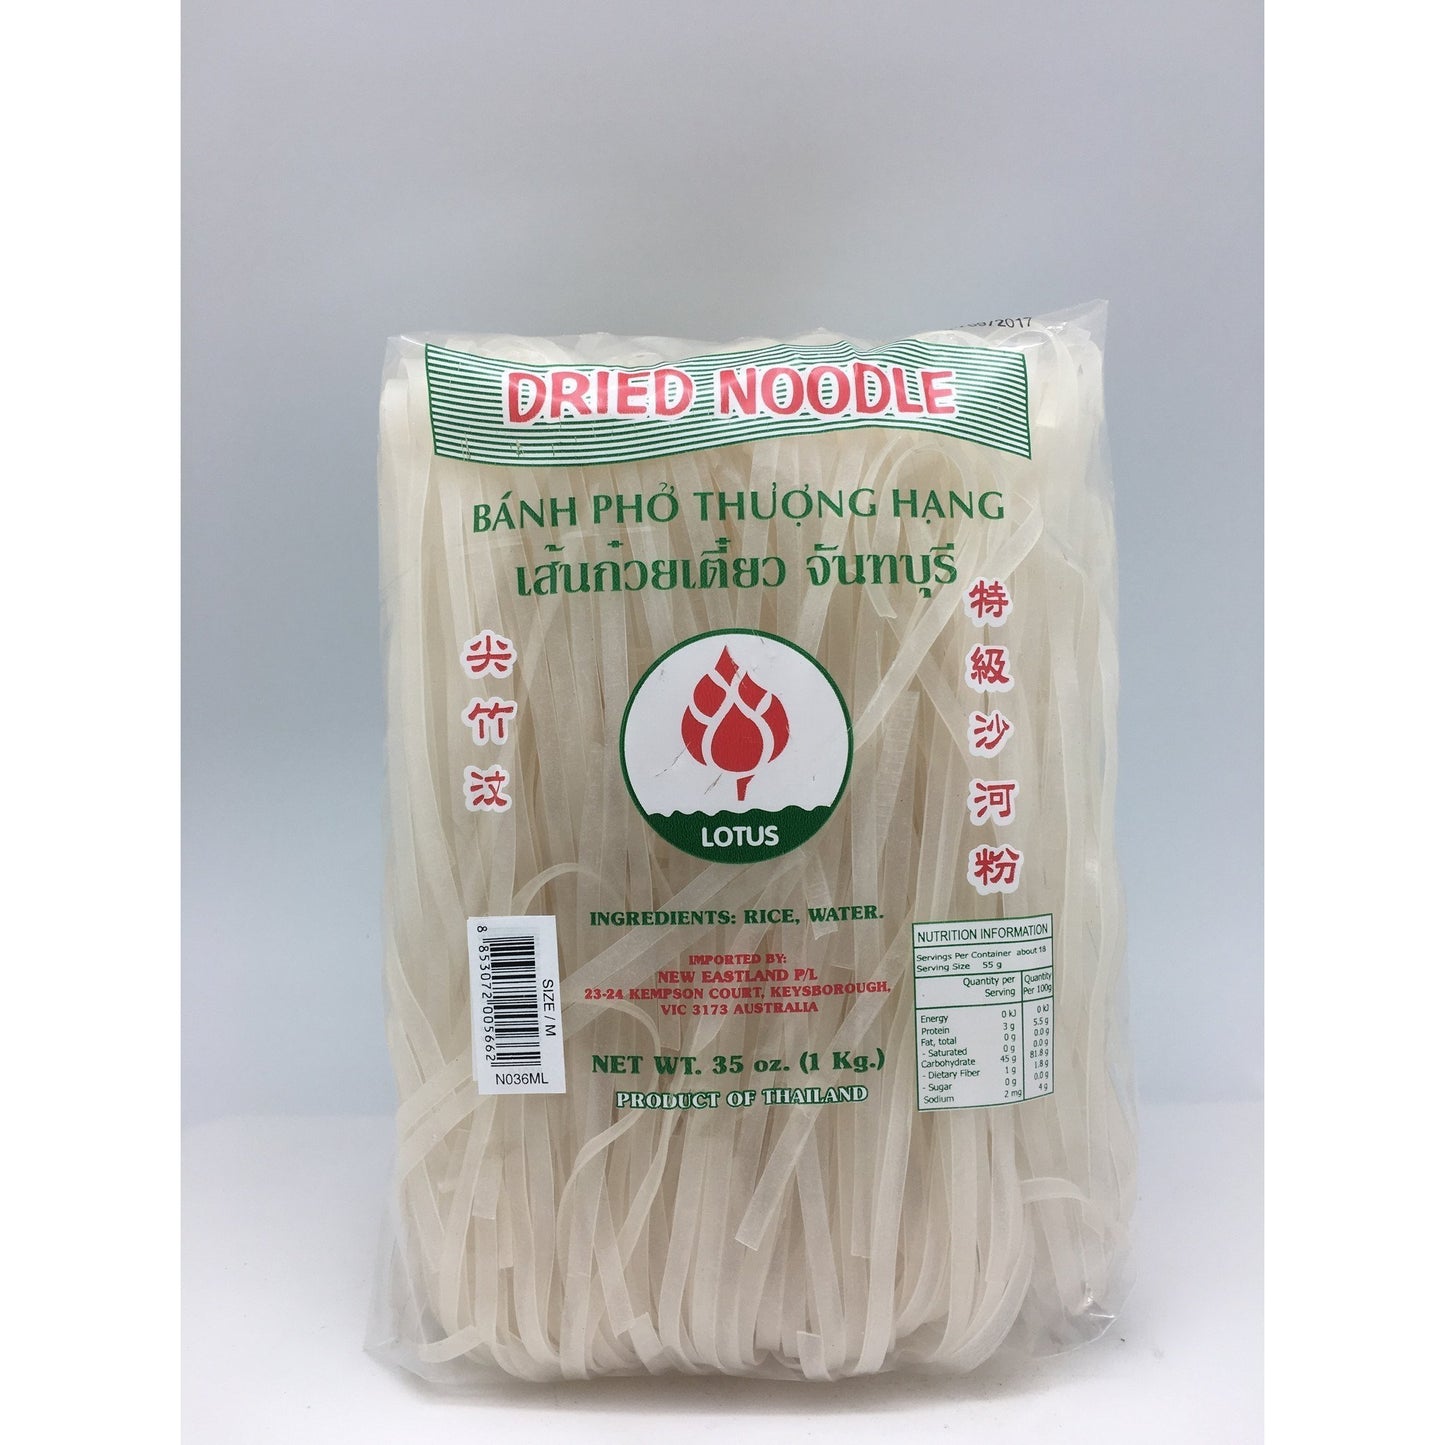 N036ML Lotus Brand - 3mm Rice Noodles 1kg - 12 bags / 1CTN - New Eastland Pty Ltd - Asian food wholesalers